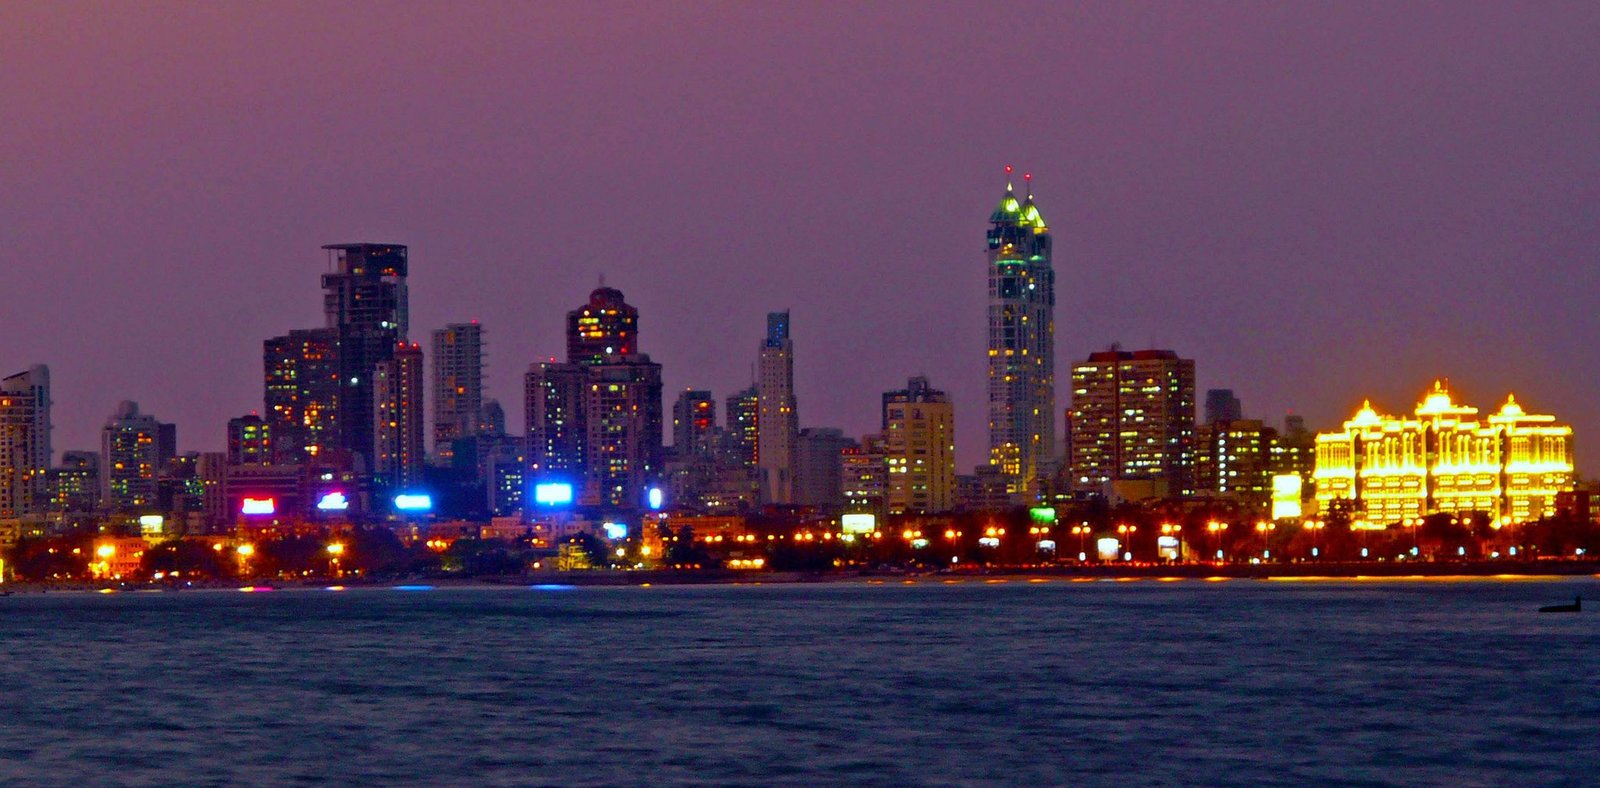 Third Mumbai